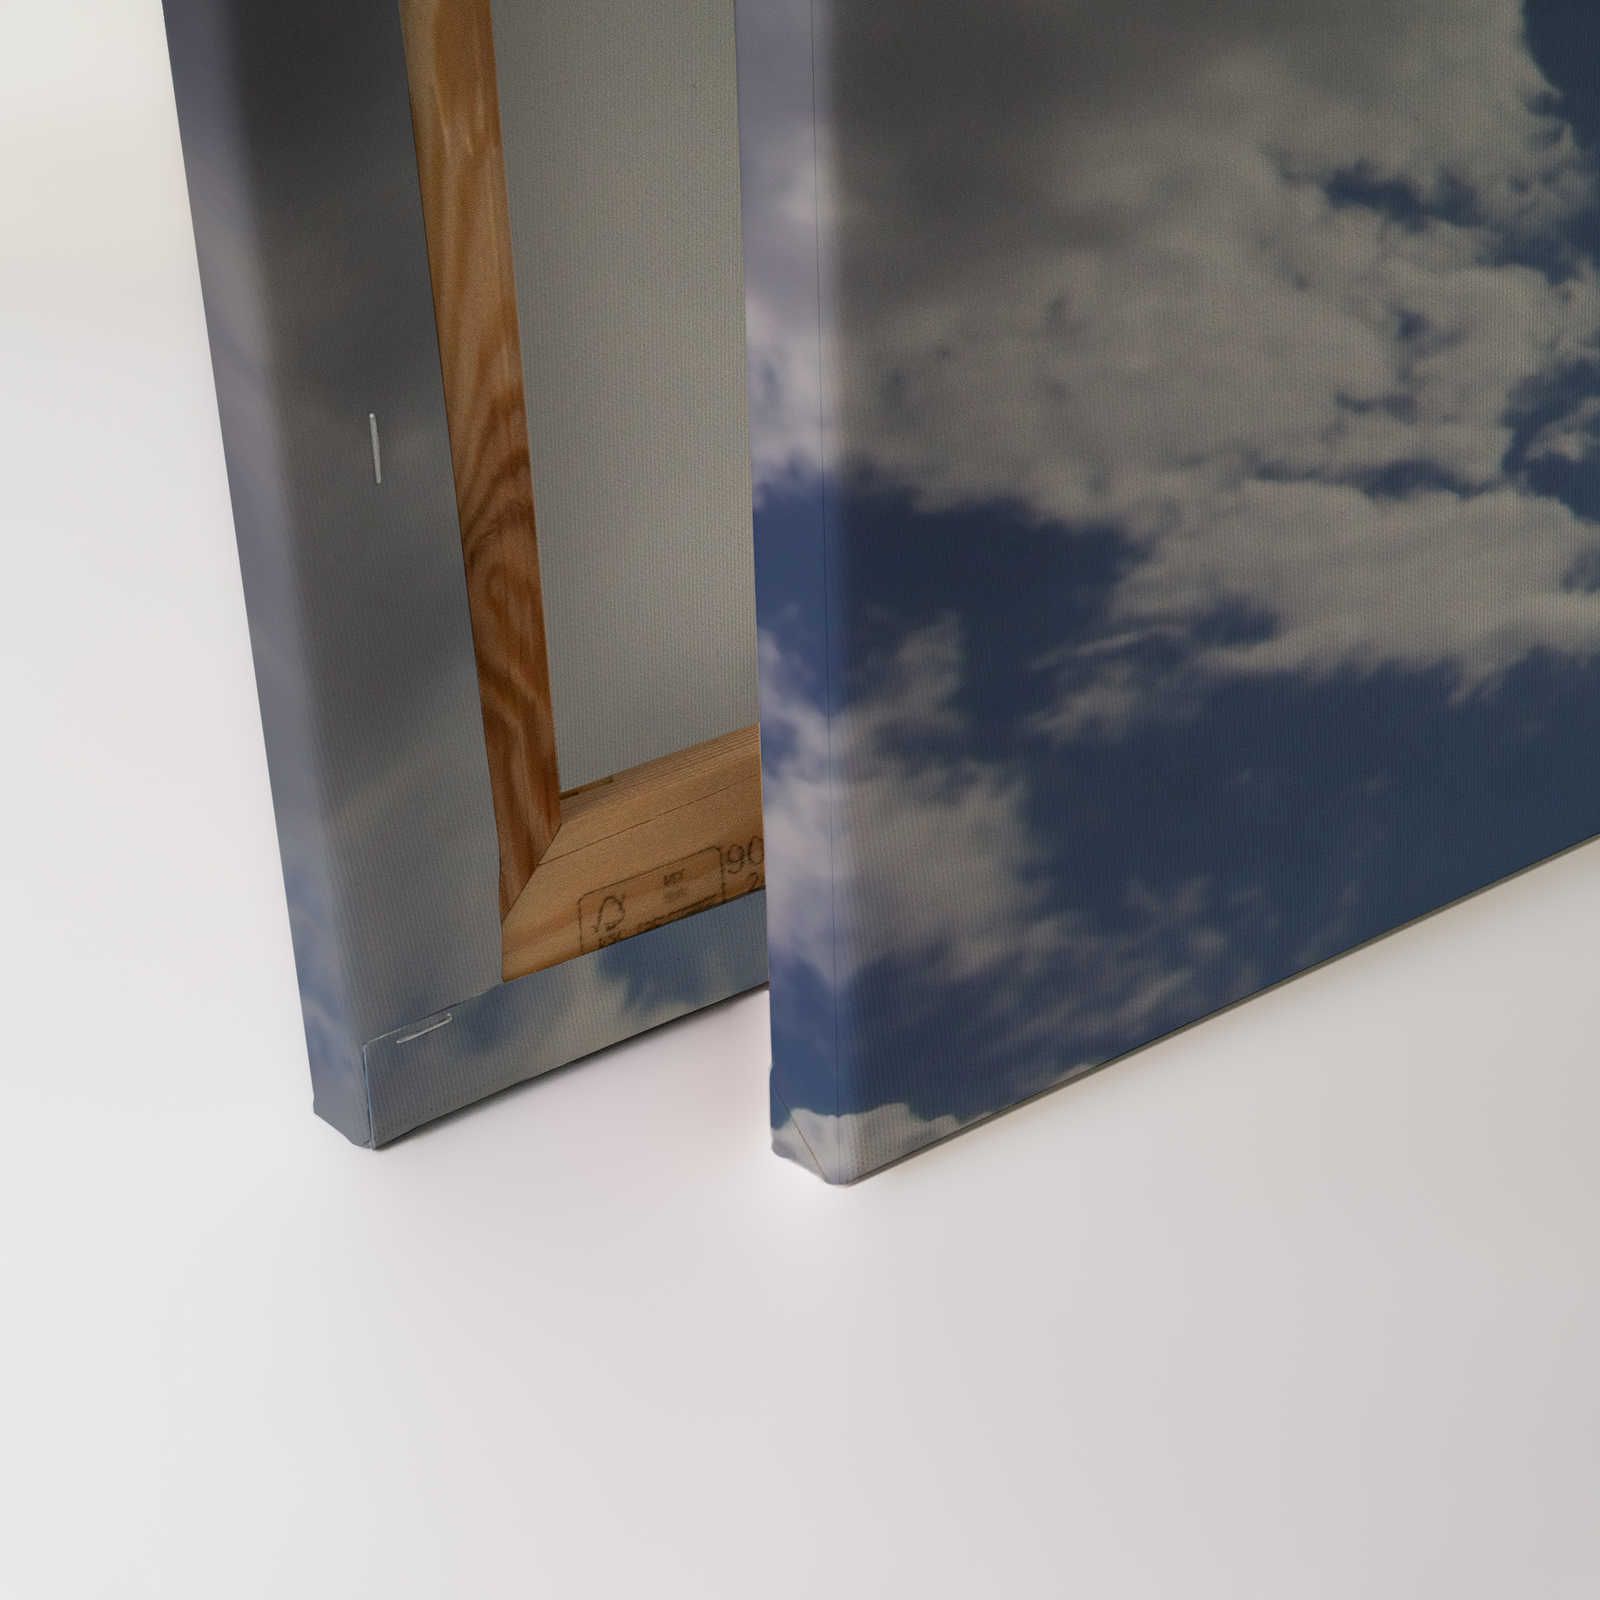             Hemelsblauw - Canvas schilderij Zonneschijn & blauwe wolkenlucht - 0,90 m x 0,60 m
        